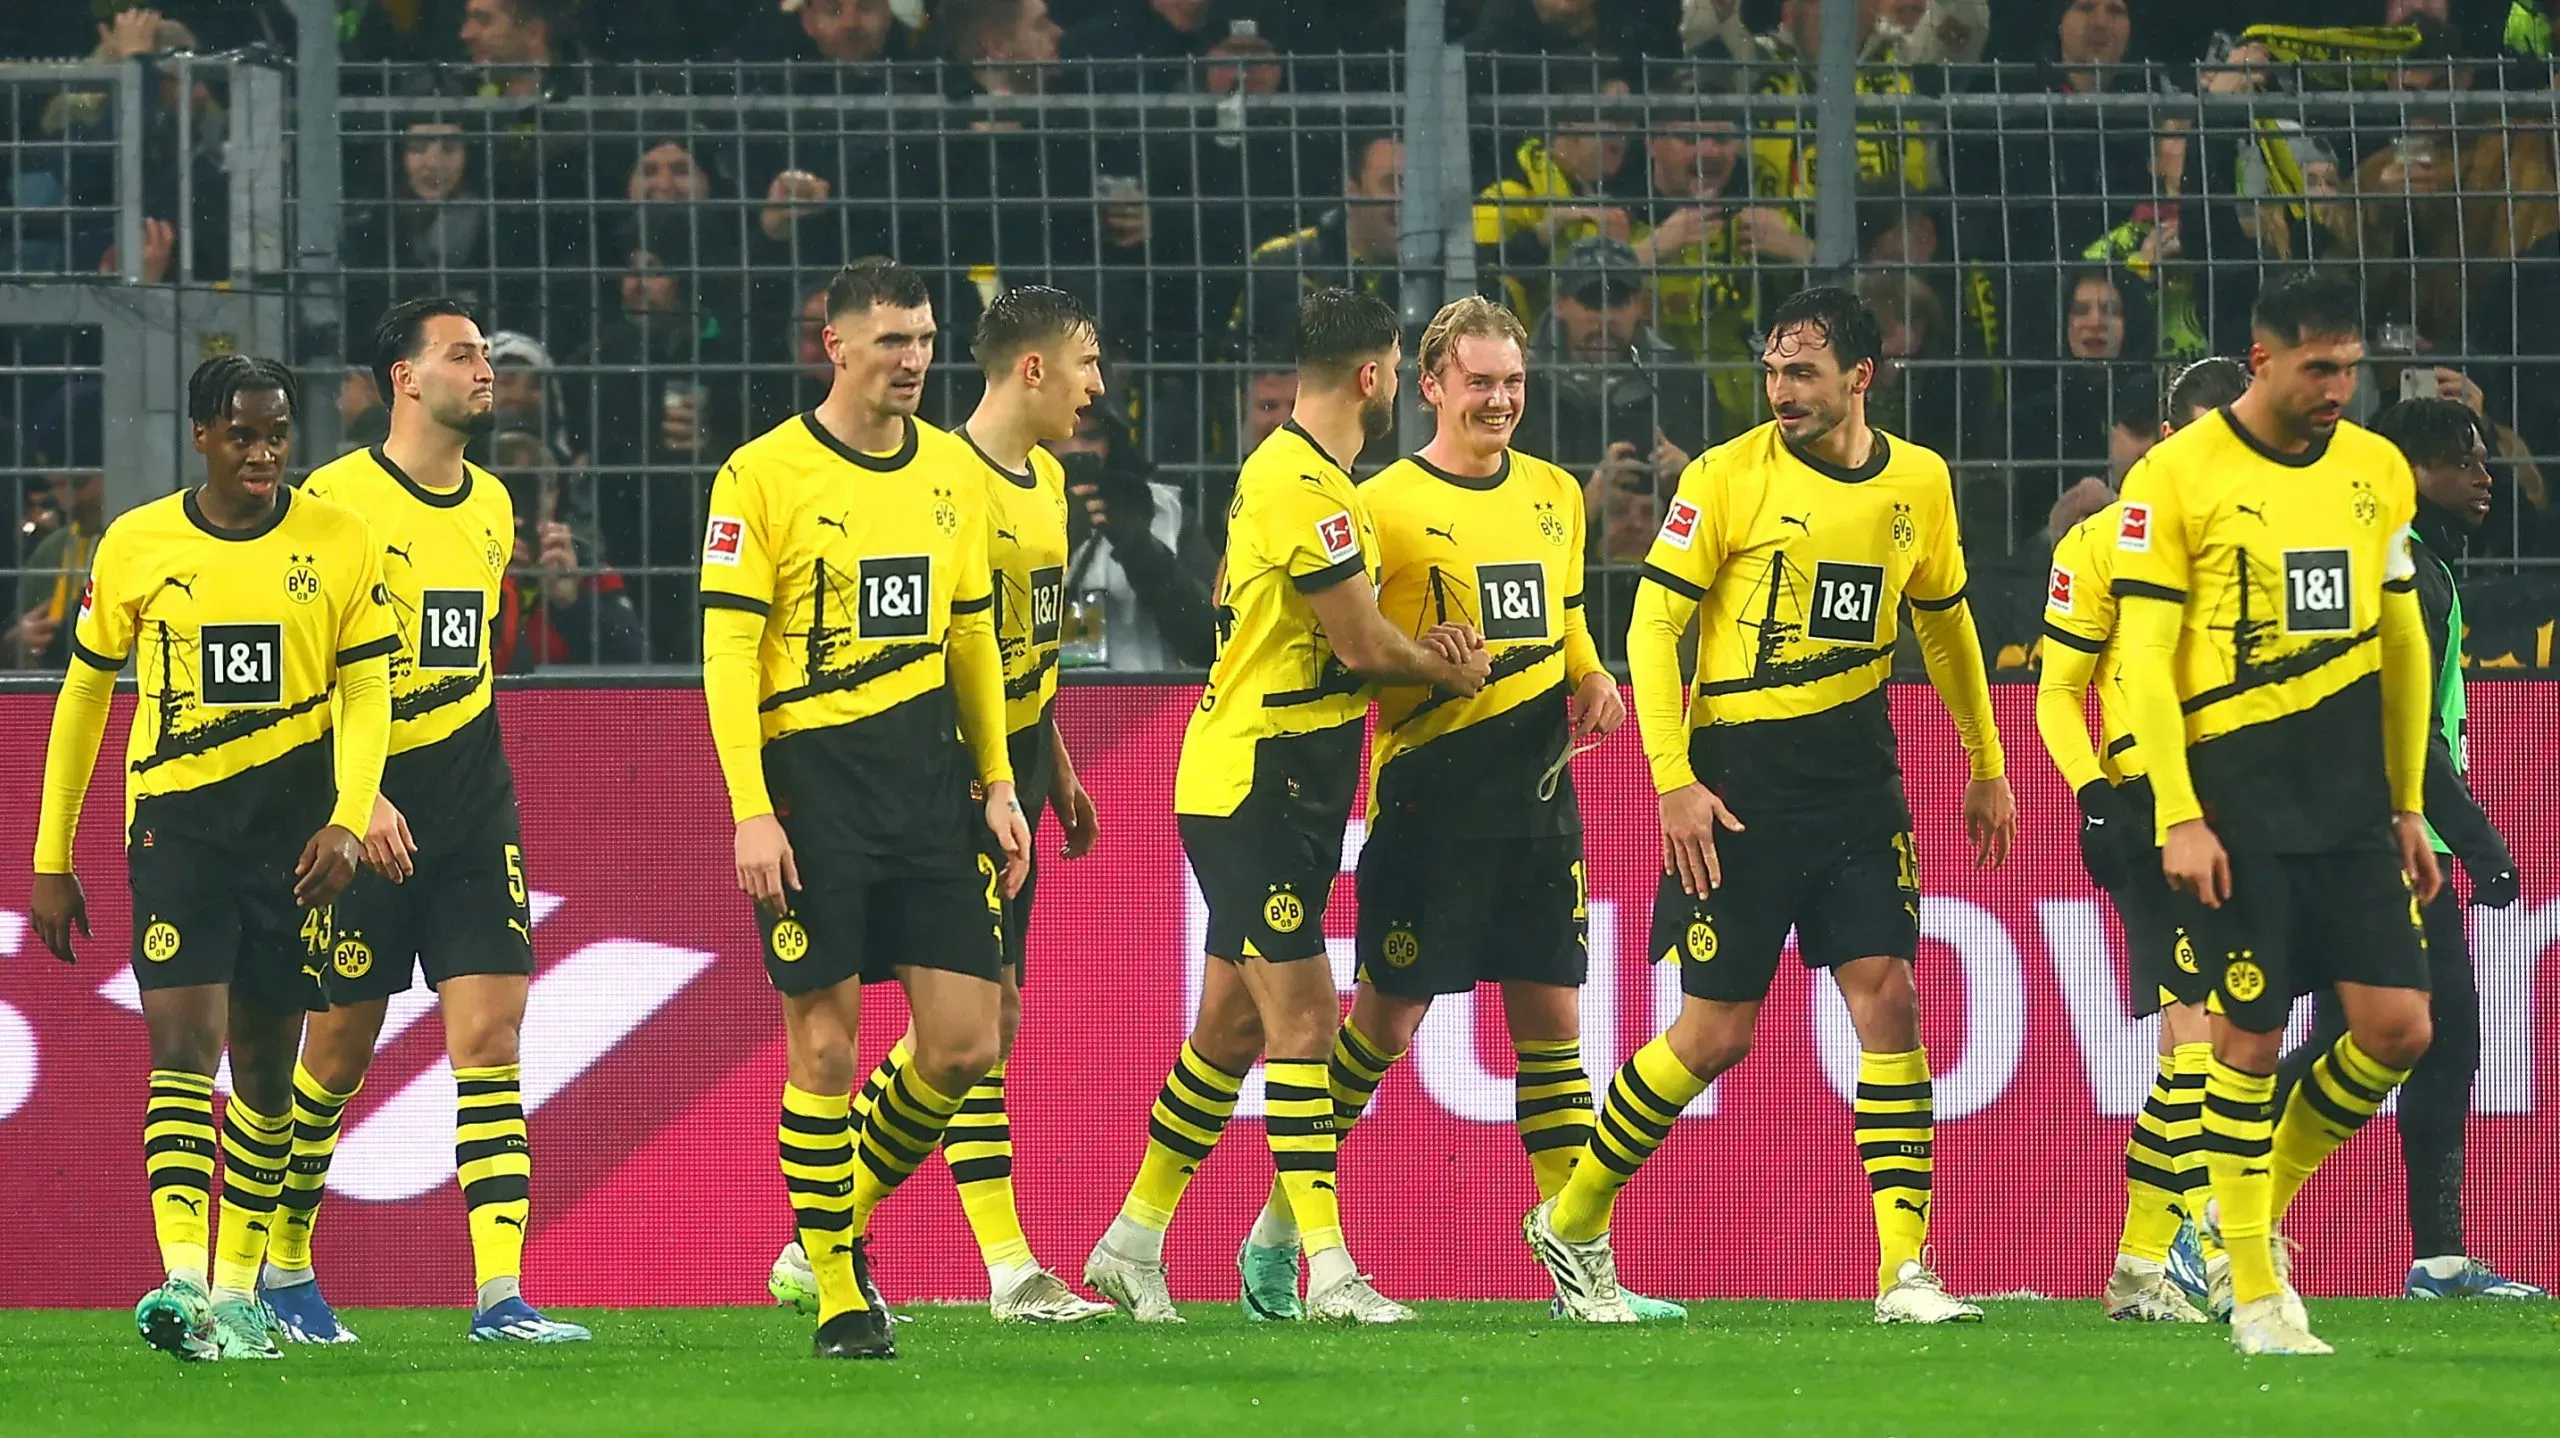 Jugadores del Dortmund celebrando el gol de Brandt frente al Mainz a fines del año pasado